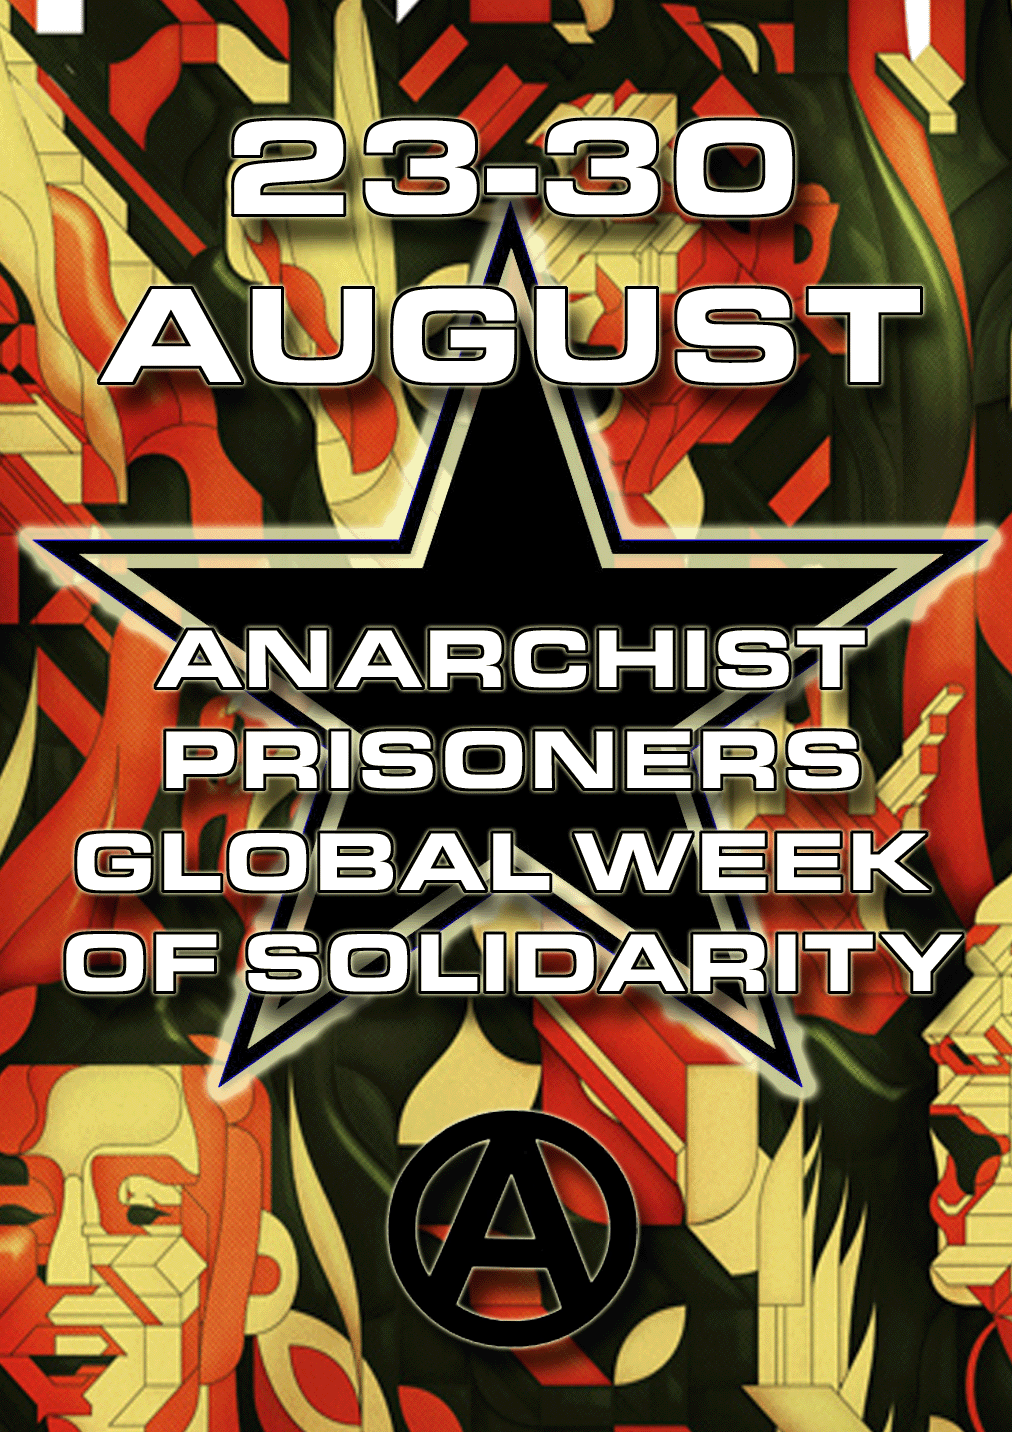 Anarchist Prisoners Global Week Of Solidarity August 23-30